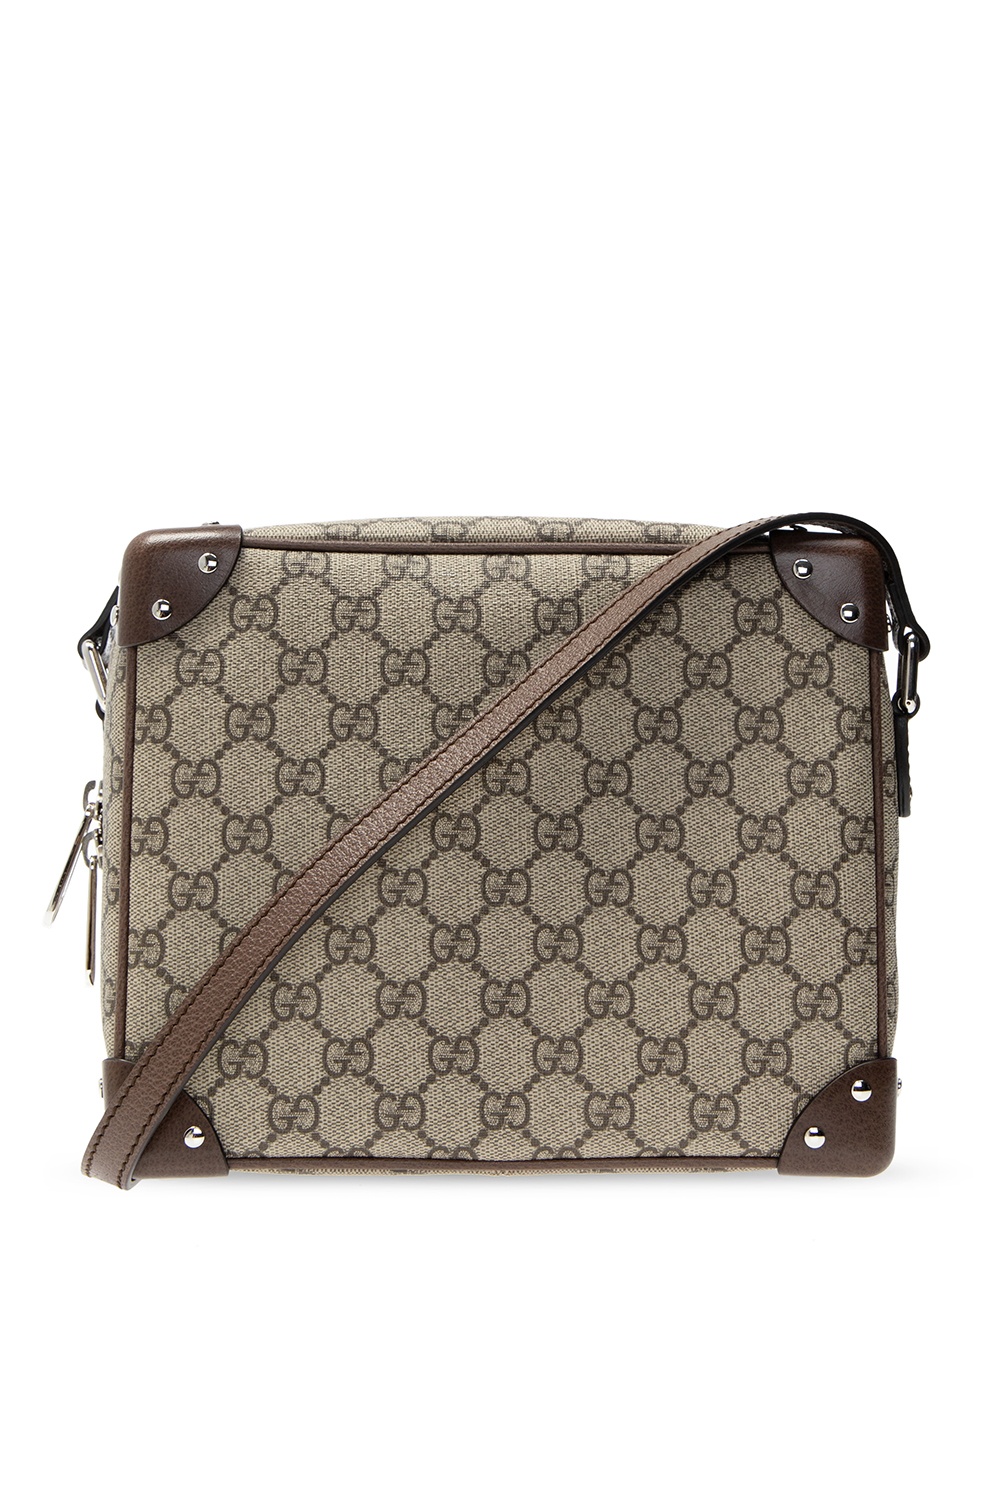 Gucci ‘GG’ shoulder bag